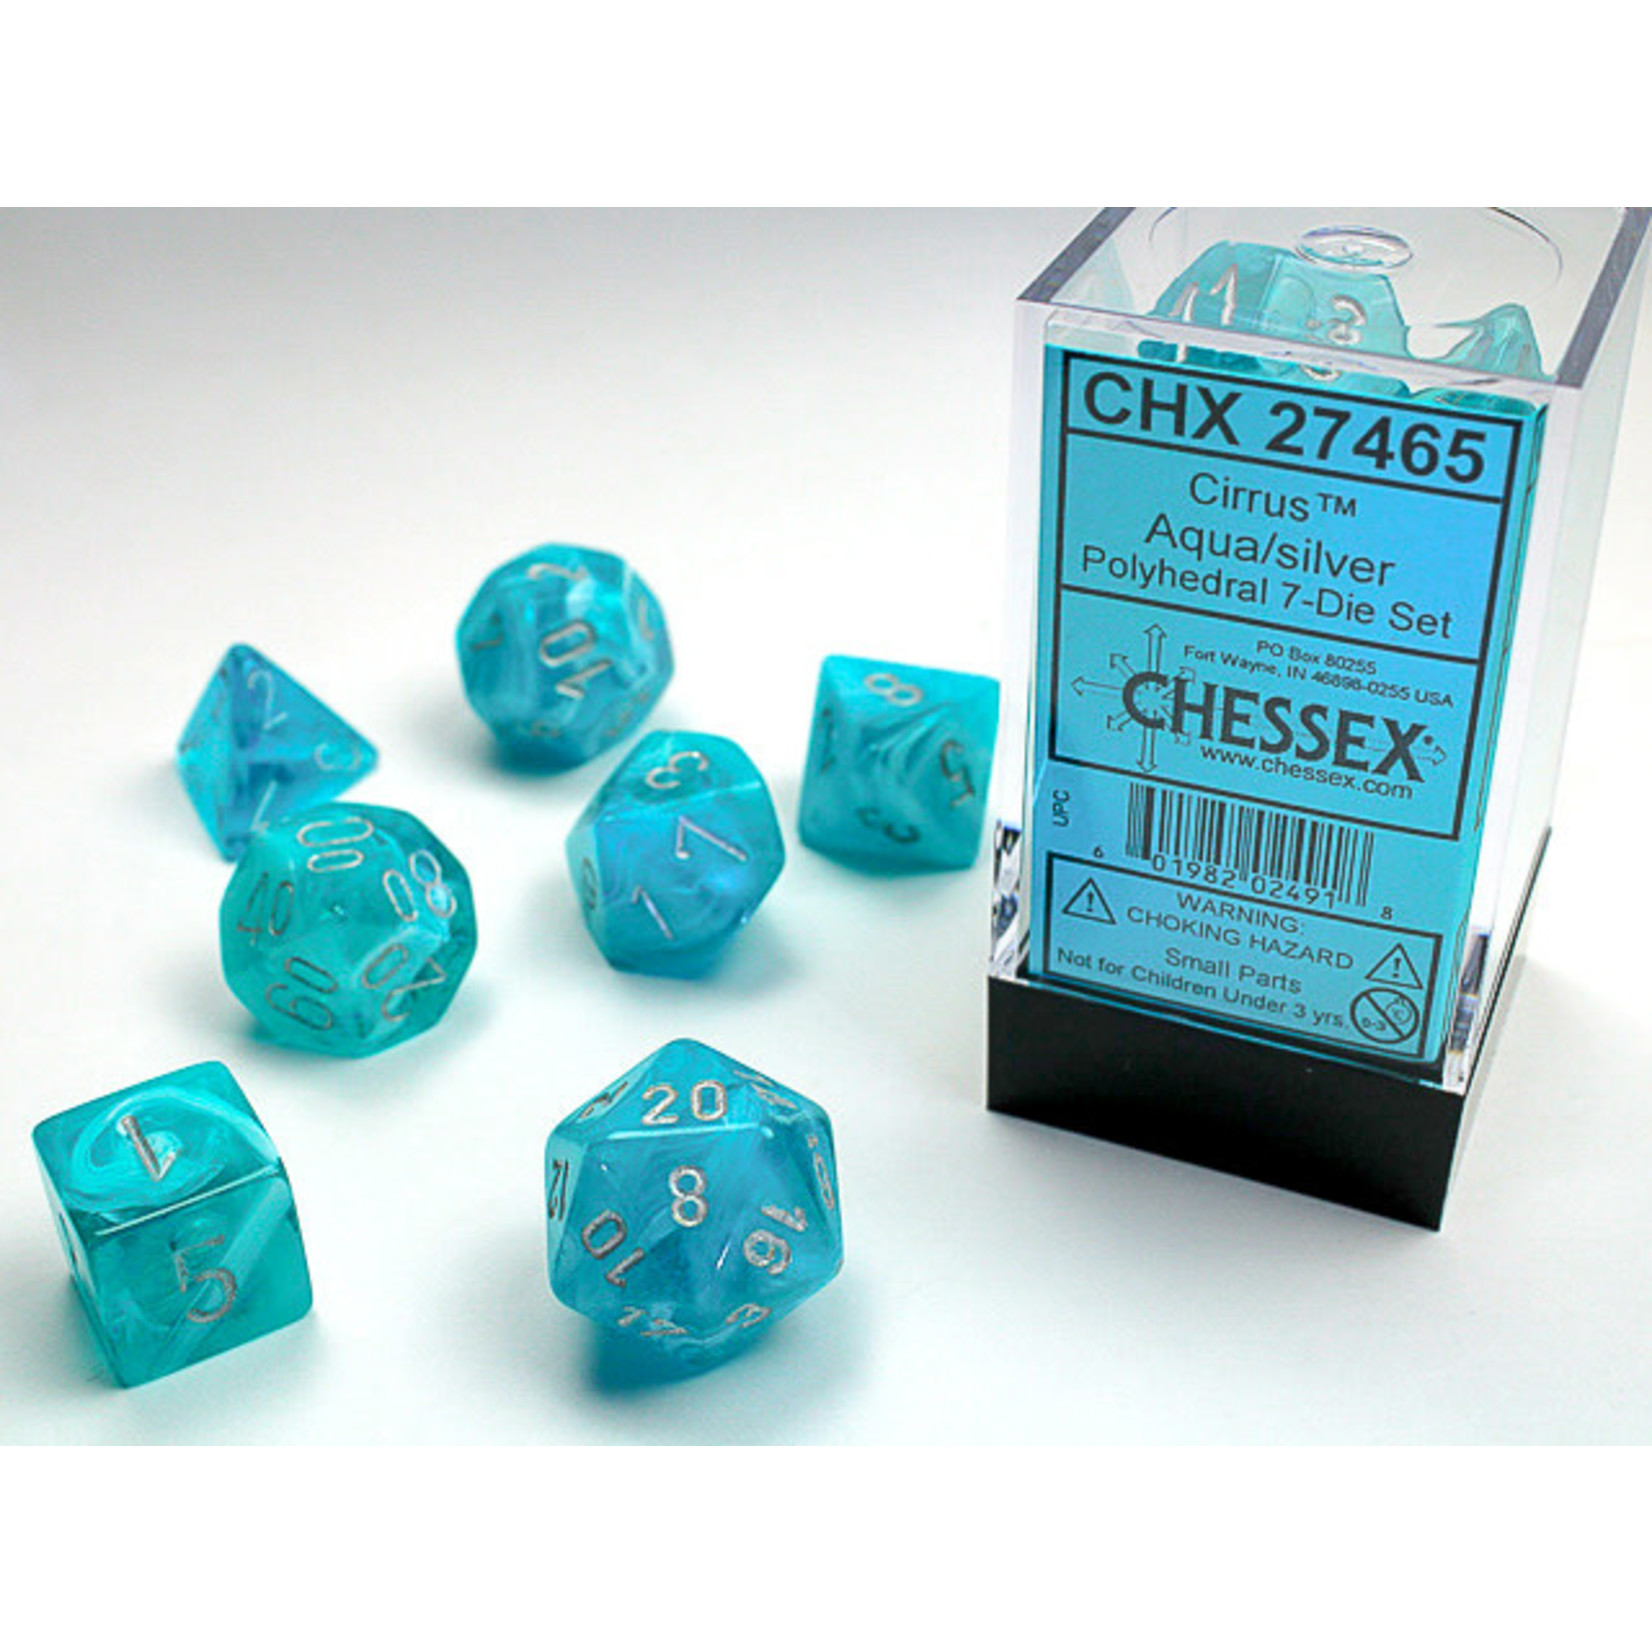 Chessex Dice RPG 27465 7pc Cirrus Aqua/Silver